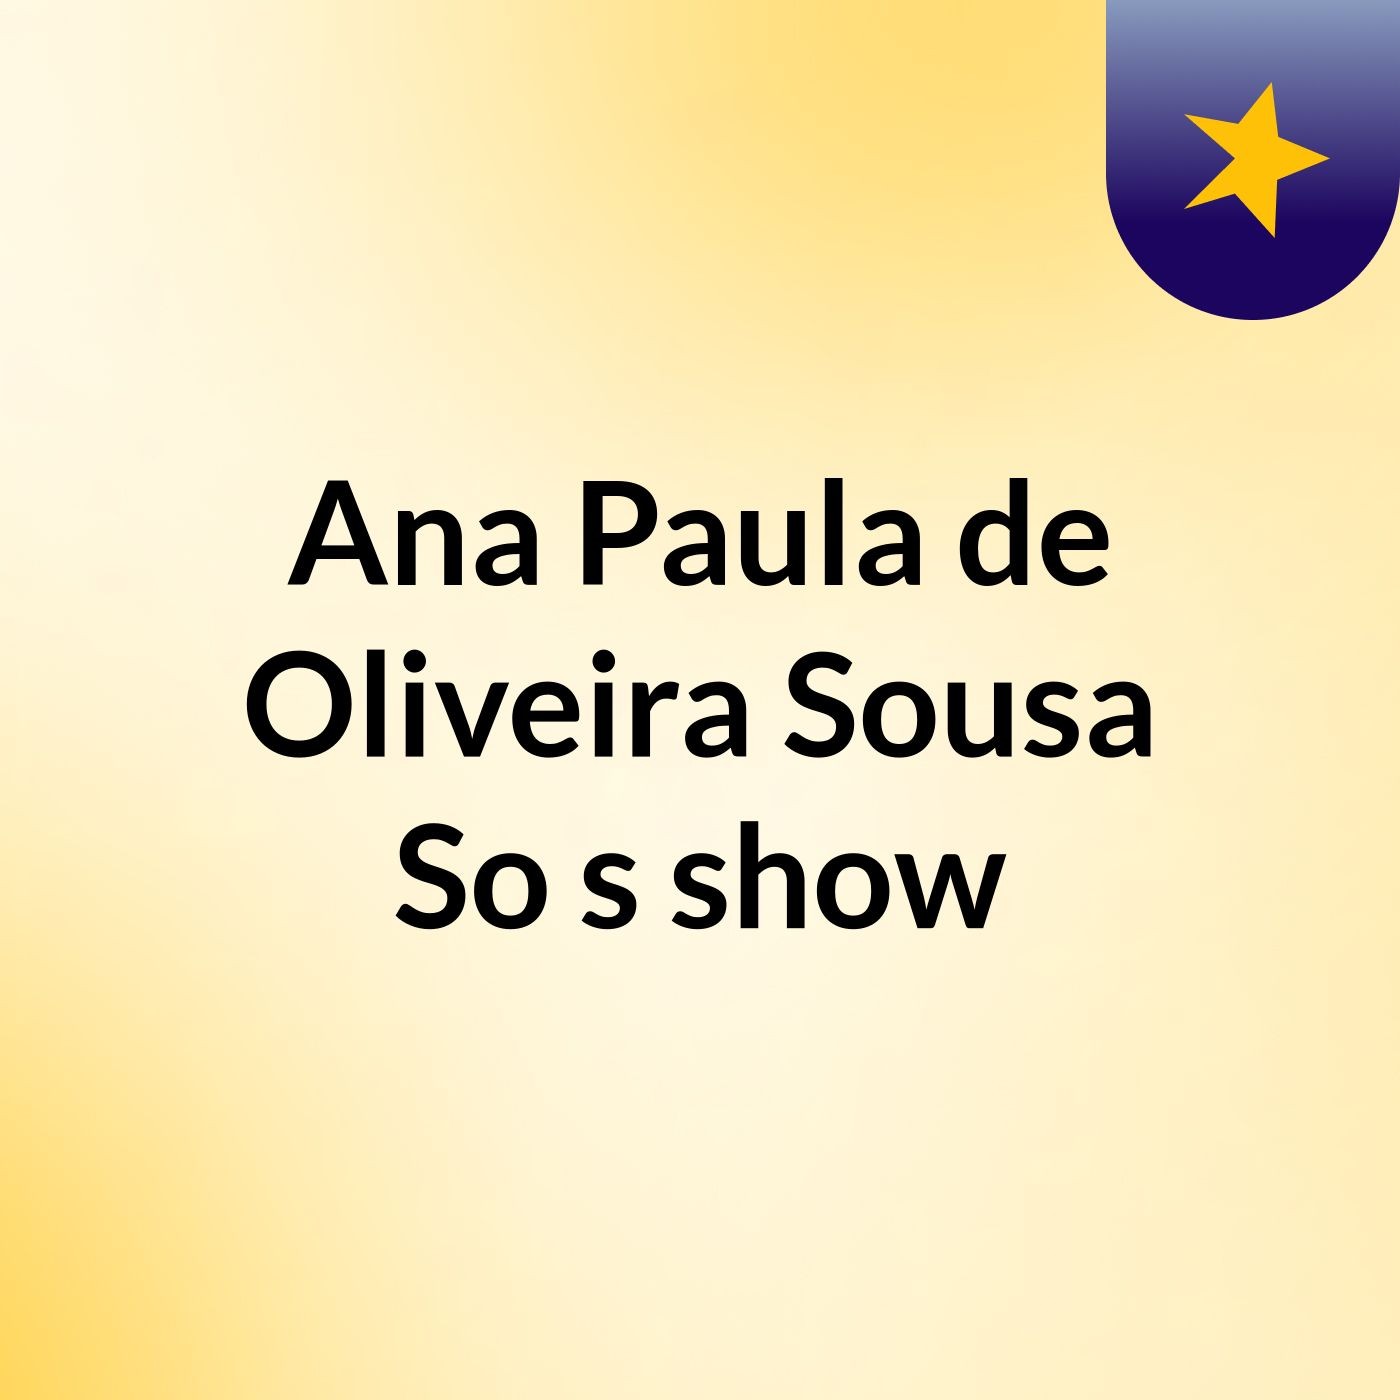 Ana Paula de Oliveira Sousa So's show